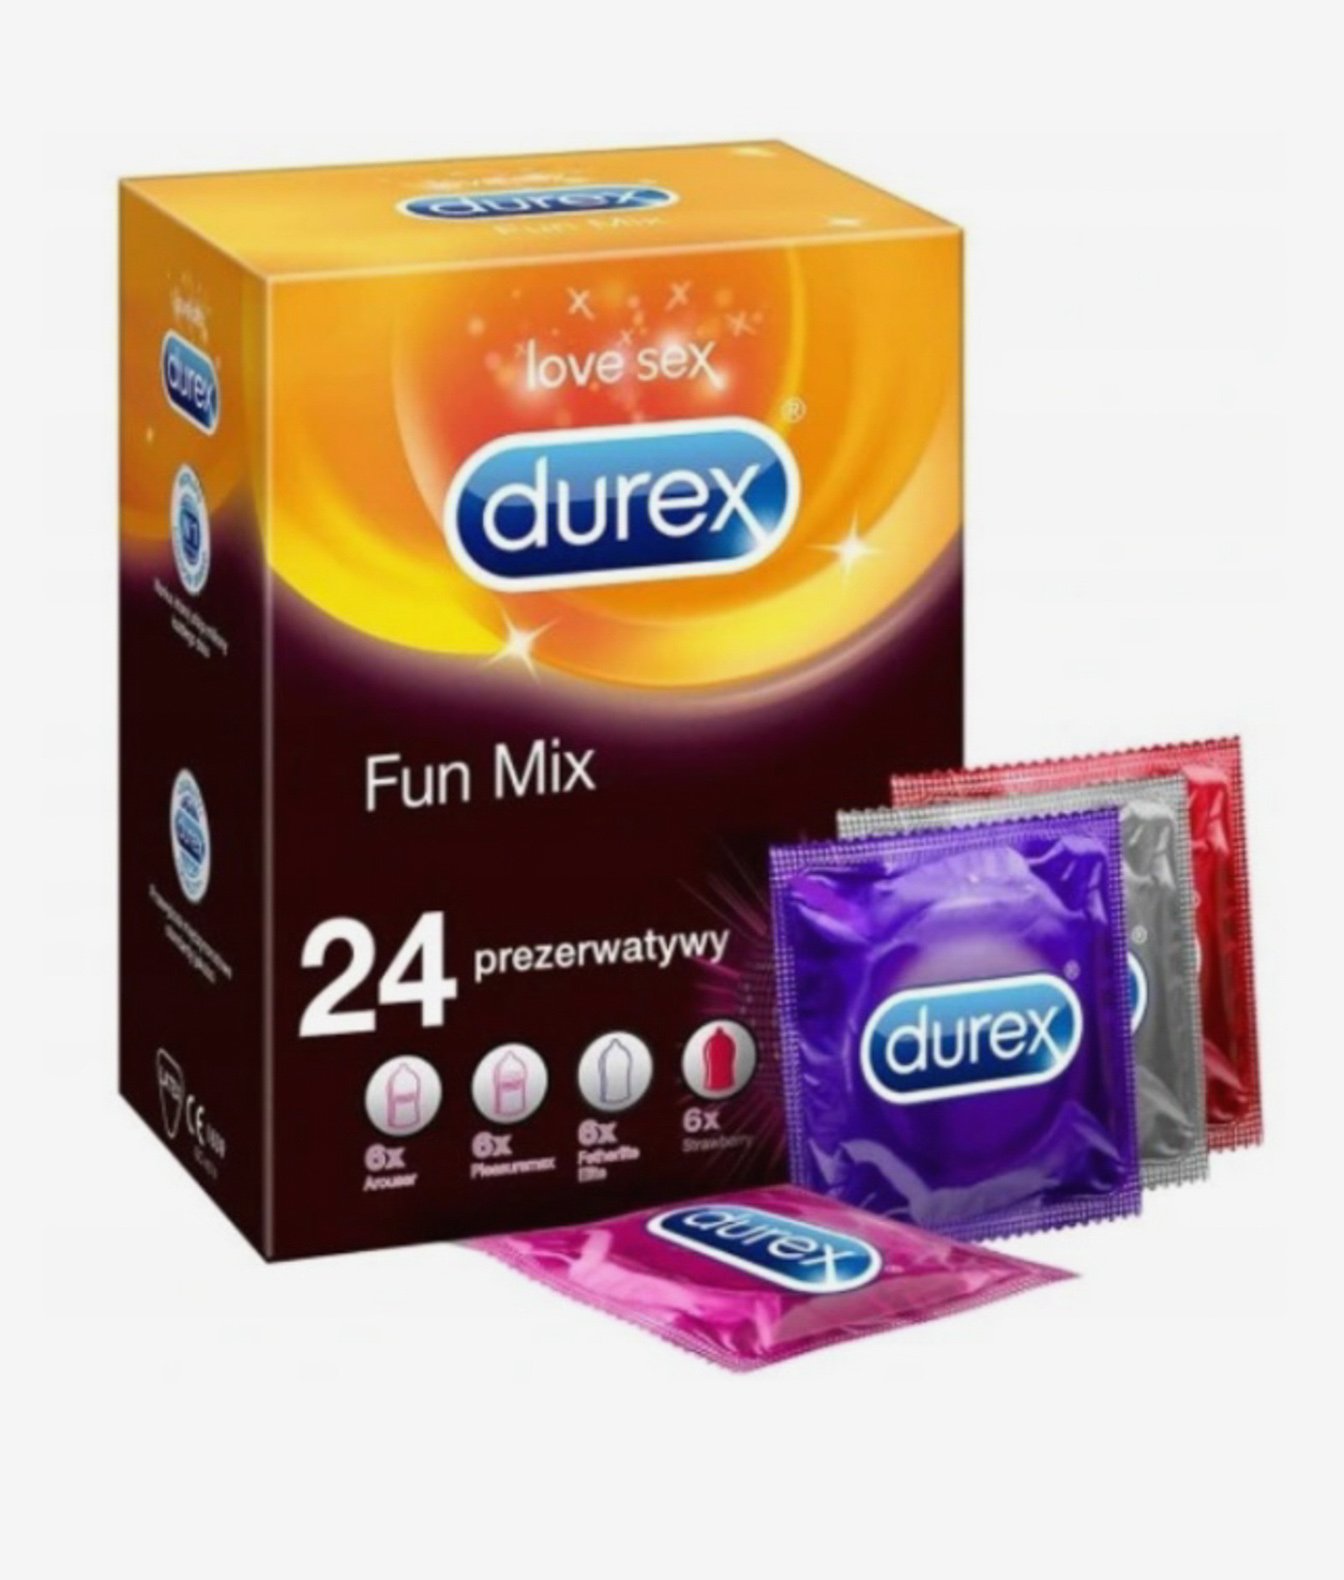 Durex Fun Mix prezerwatywy 